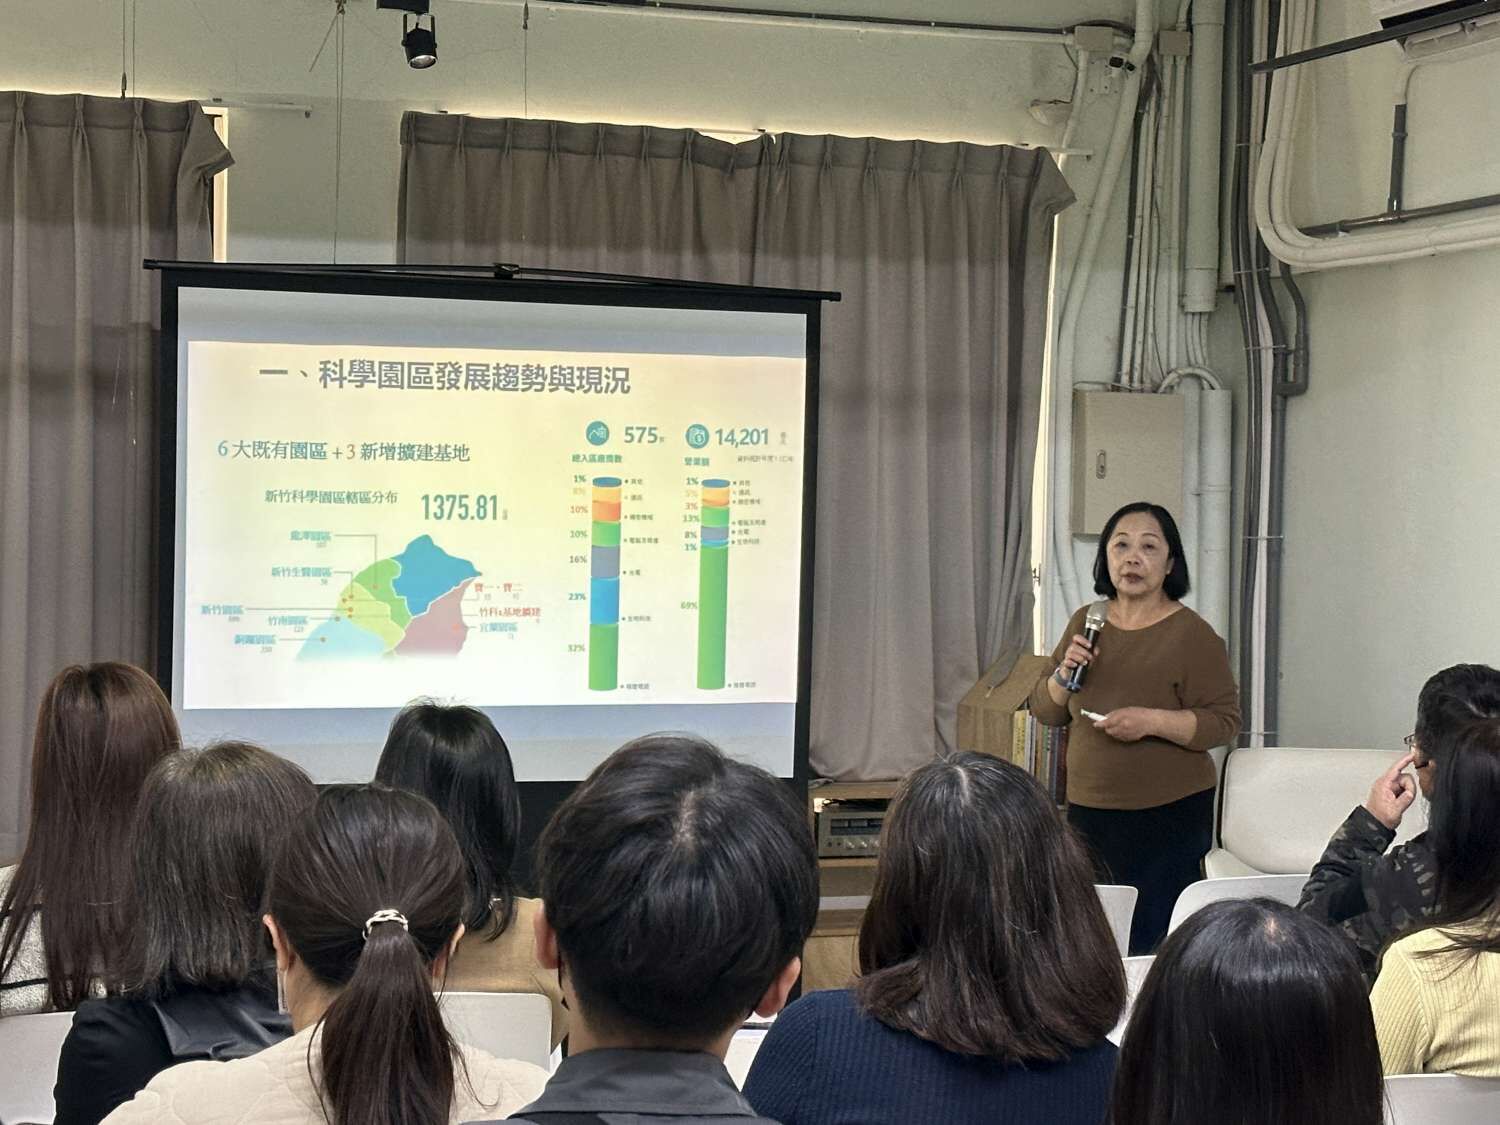 邀請黃柏儒國立台北大學都計研究博士討論低碳與淨零策略下都市計畫的作為與實踐